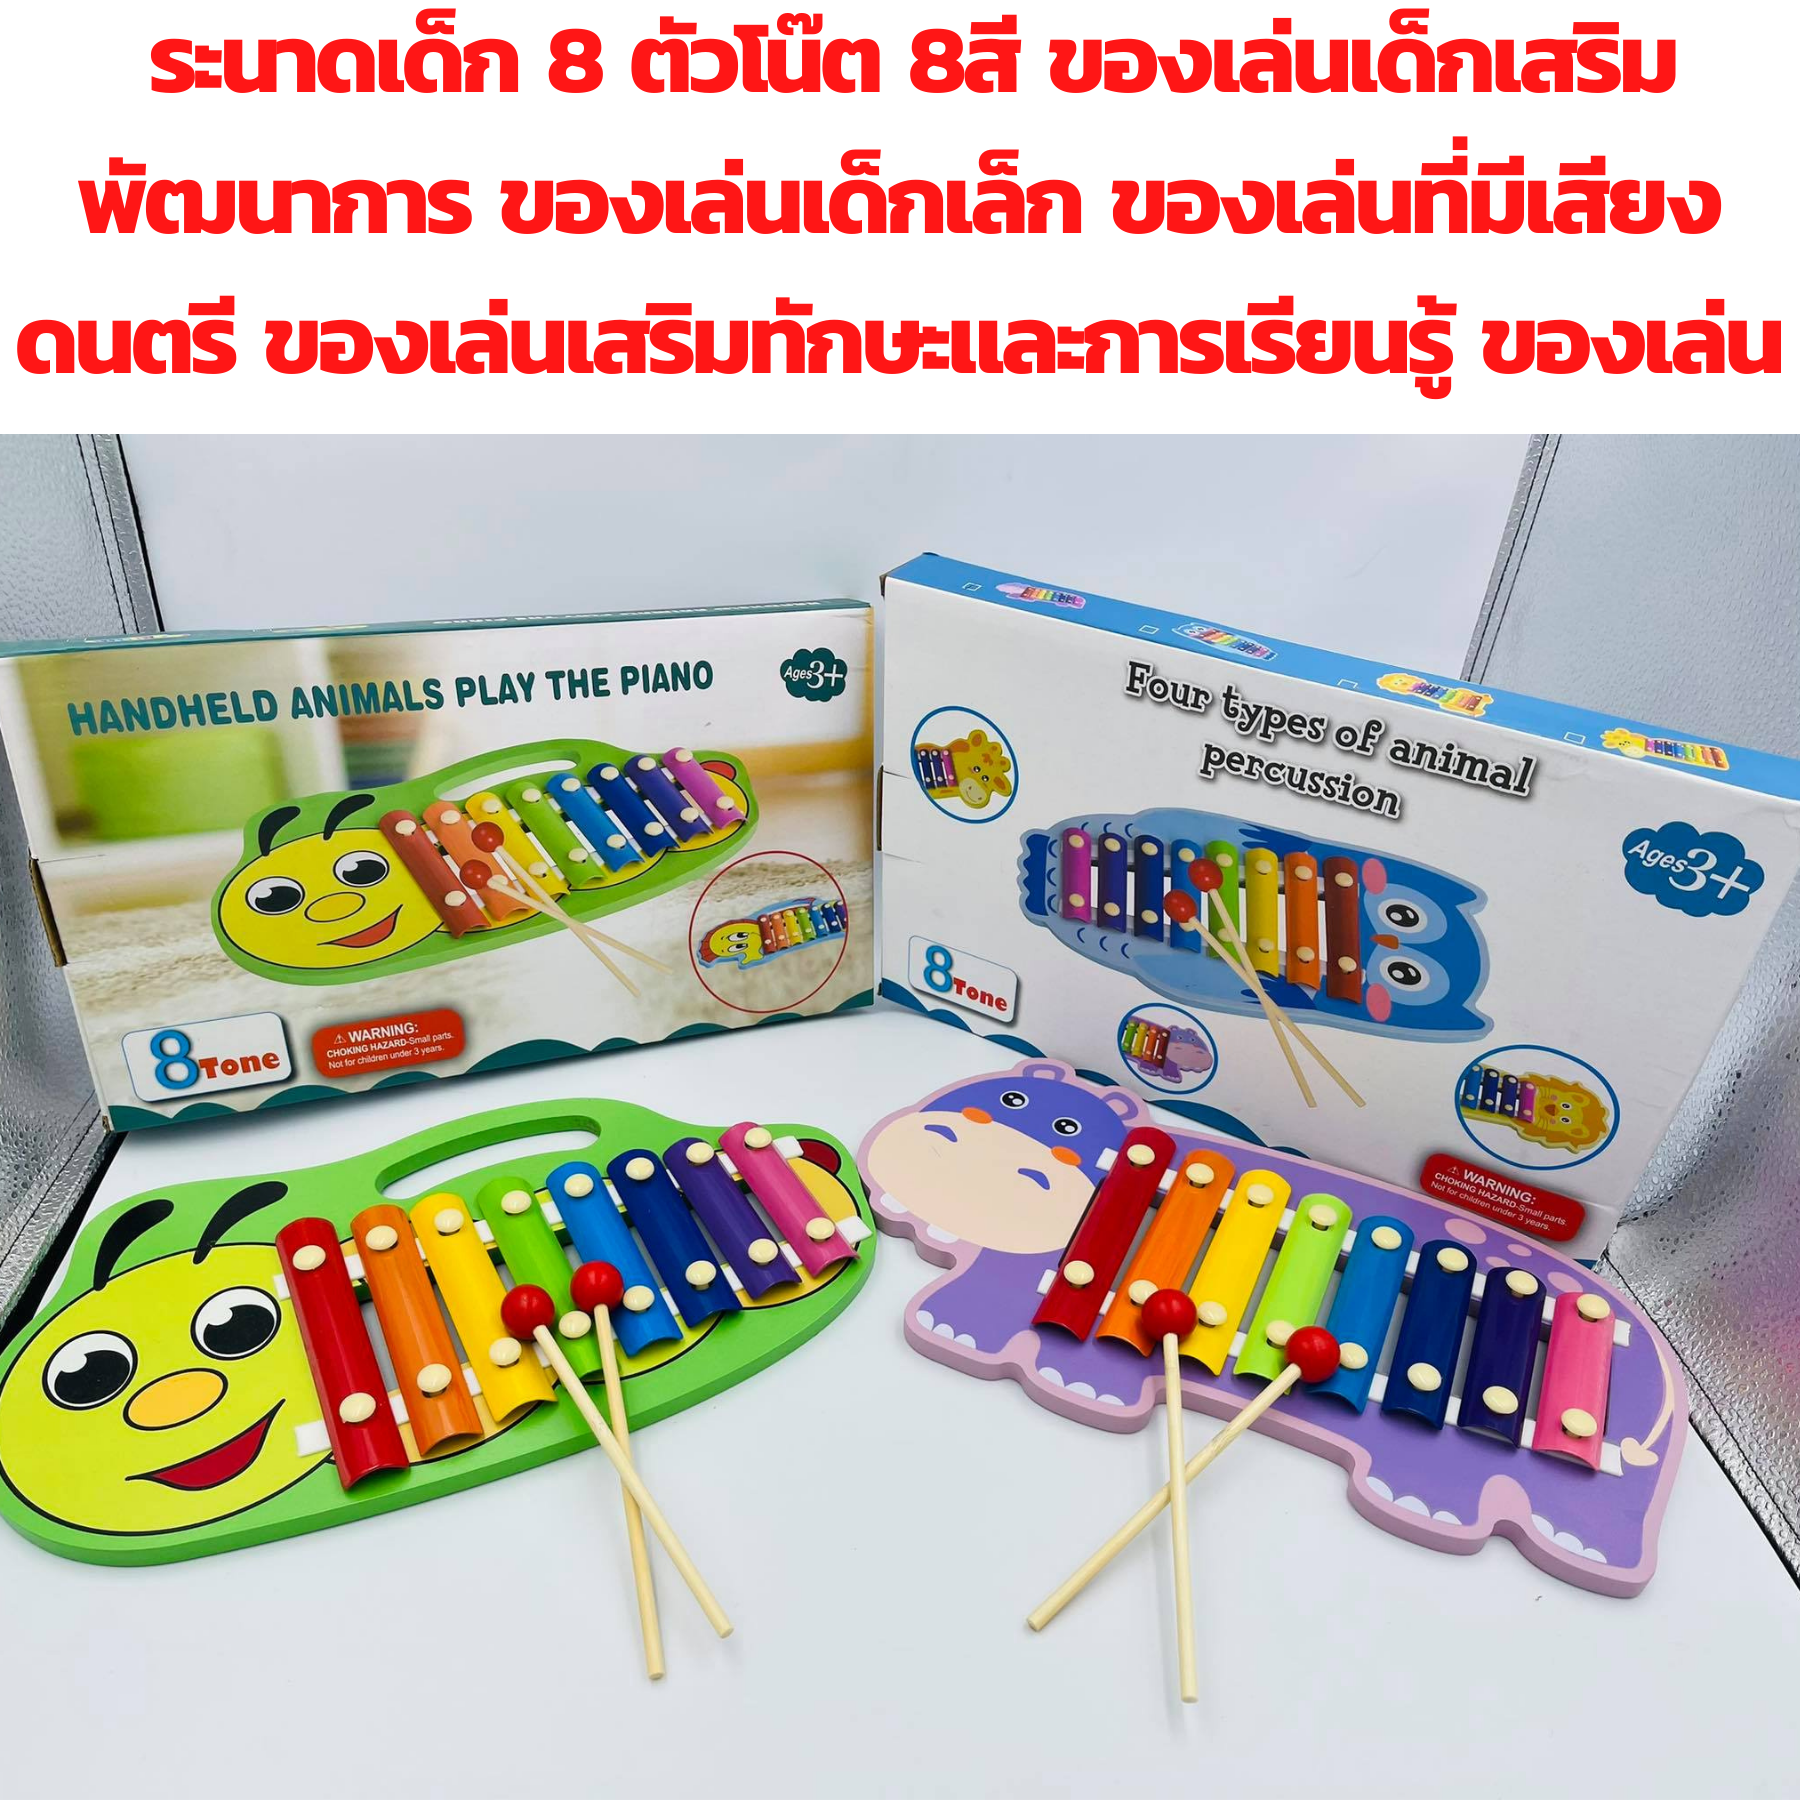 ส่งจากไทย ของเล่นเด็ก ระนาด เครื่องดนตรีระนาดไม้ 8 โน้ตของเล่นเสริมพัฒนาการสําหรับเด็ก ระนาดเด็ก